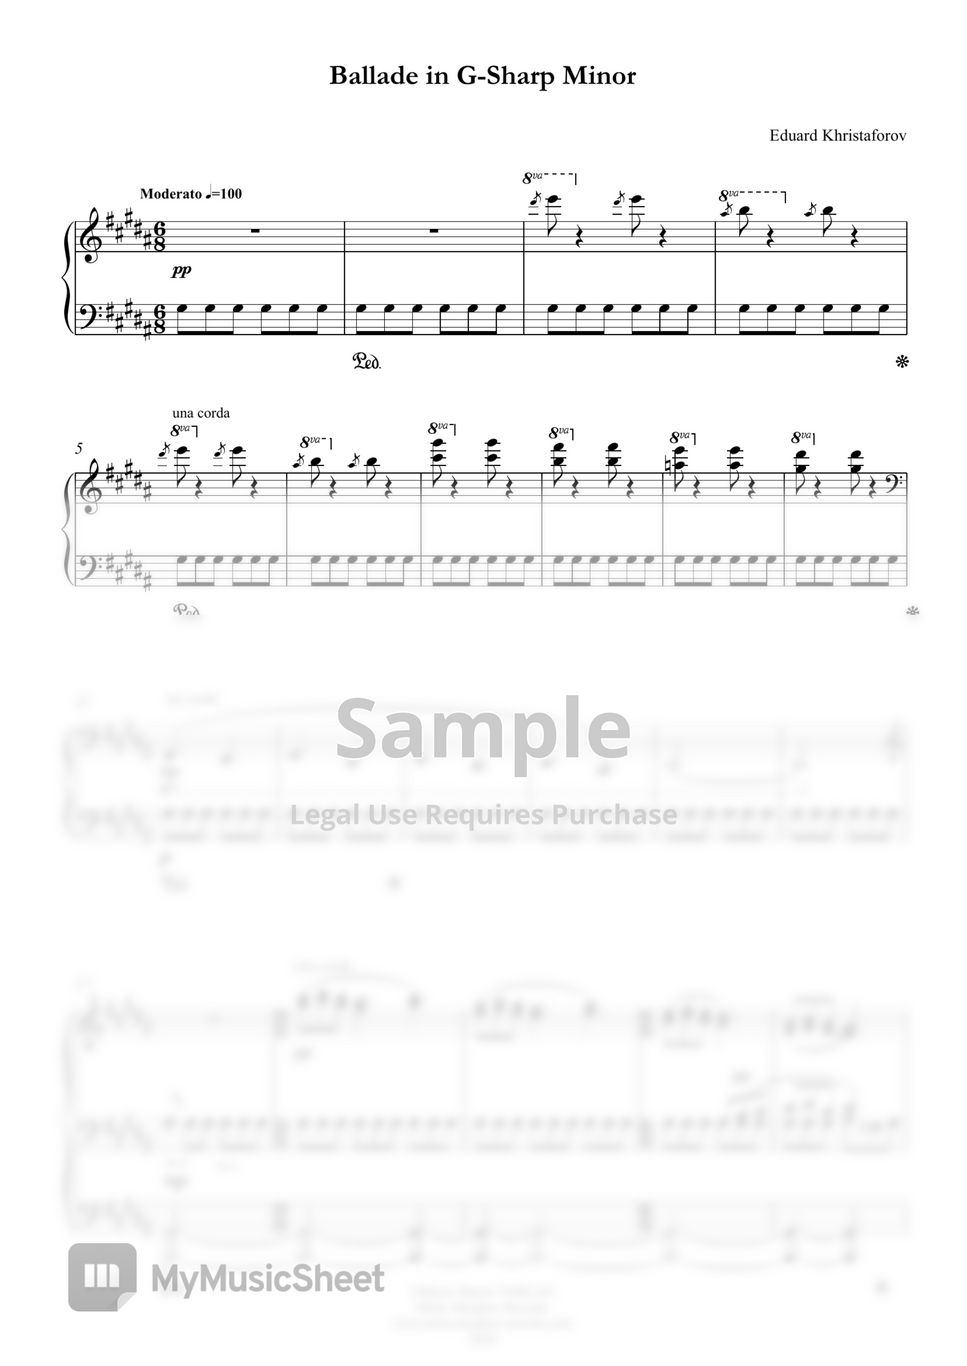 Eduard Khristaforov - Ballade in G Sharp Minor (Ballade for piano)